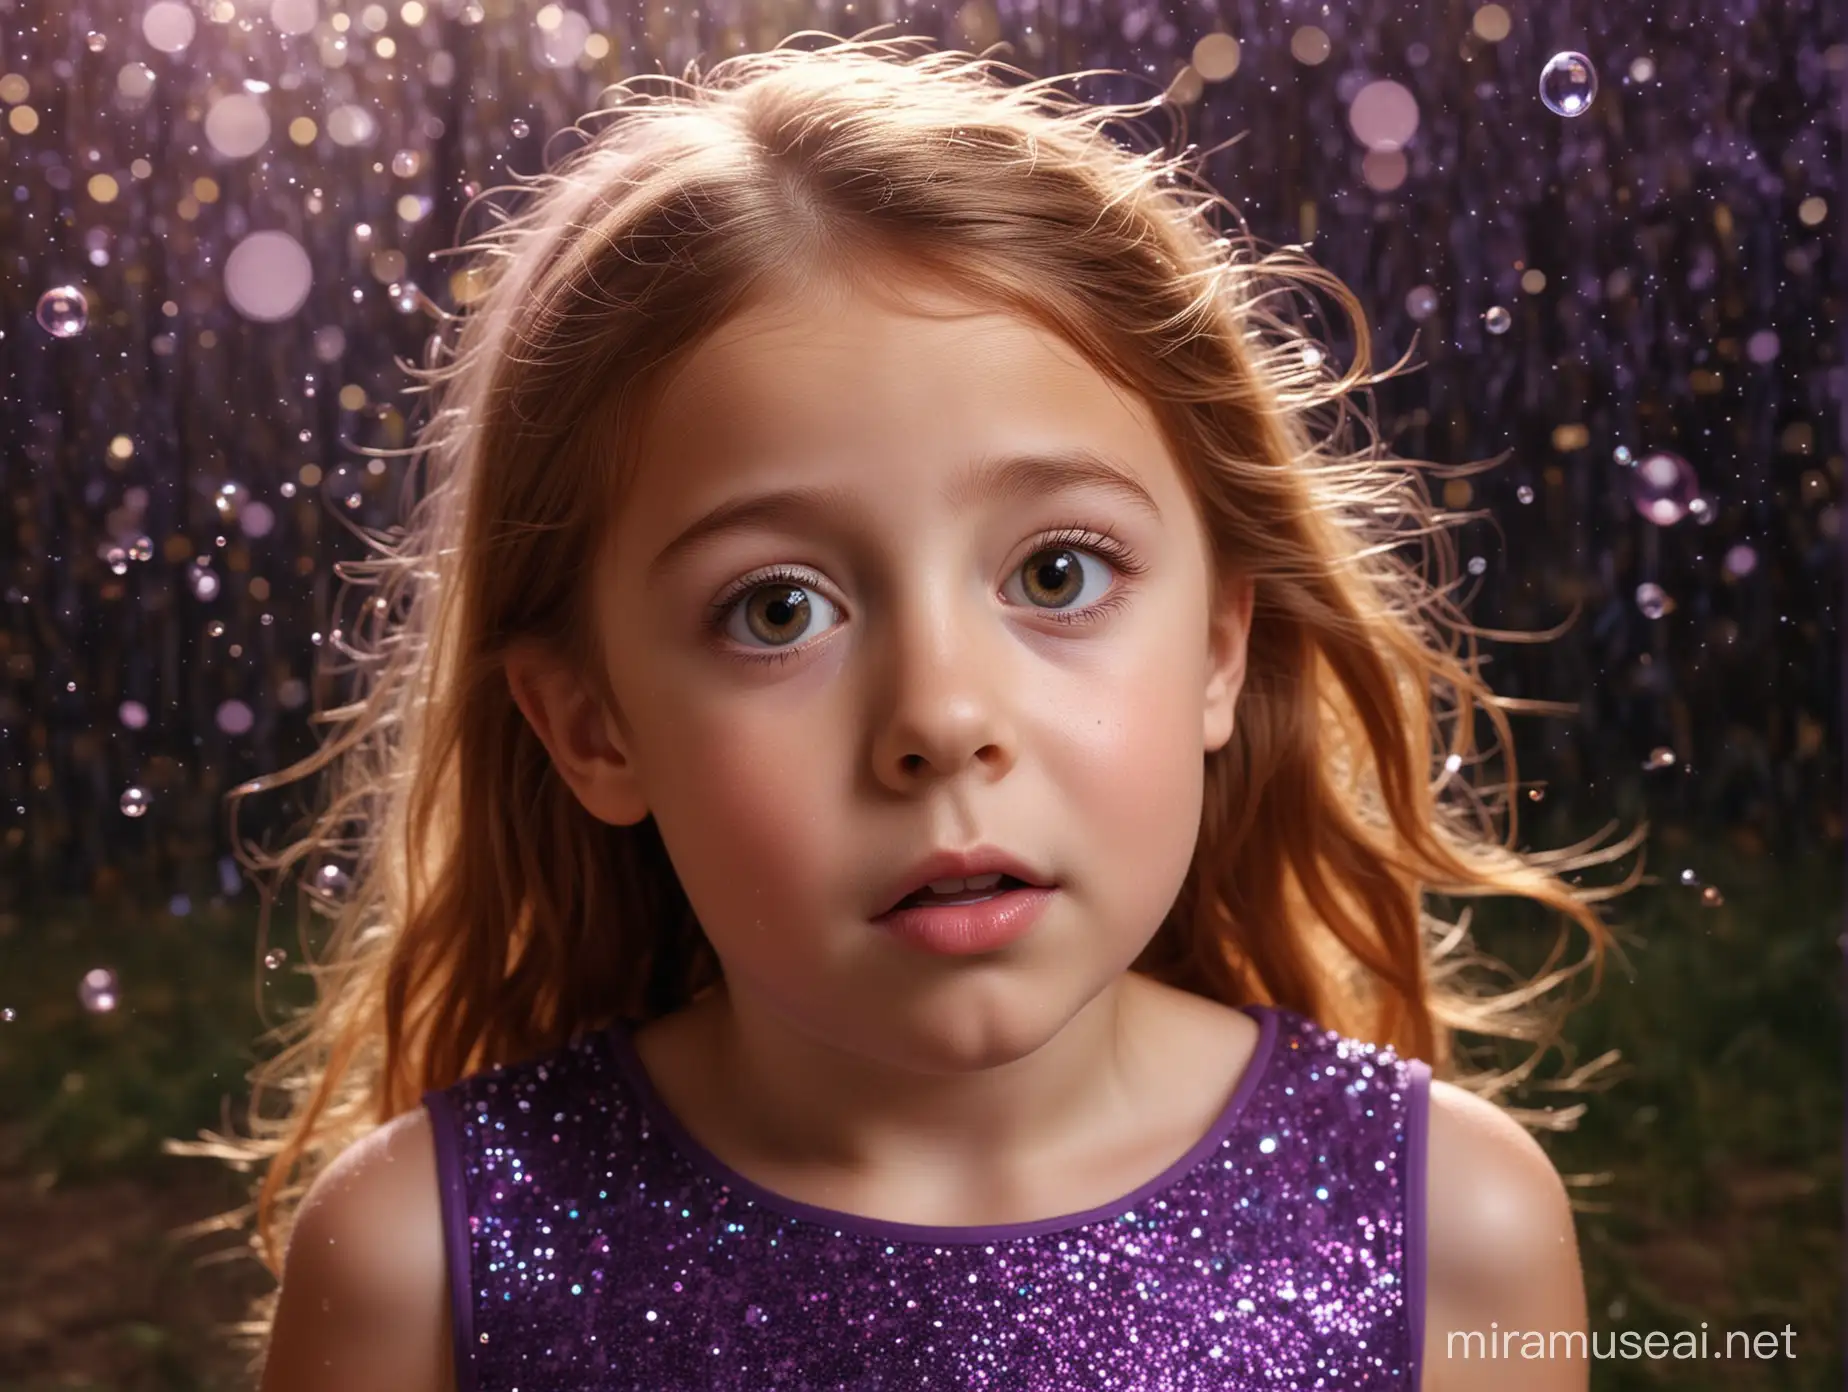 gros plan visage petite fille 6 ans cheveux châtain, regard surpris. Elle a une robe violette sans manches, simple, brillante. elle est dans une forêt enchantée magique féérique la nuit lumineuse avec des paillettes qui volent partout, des bulles, des fées.